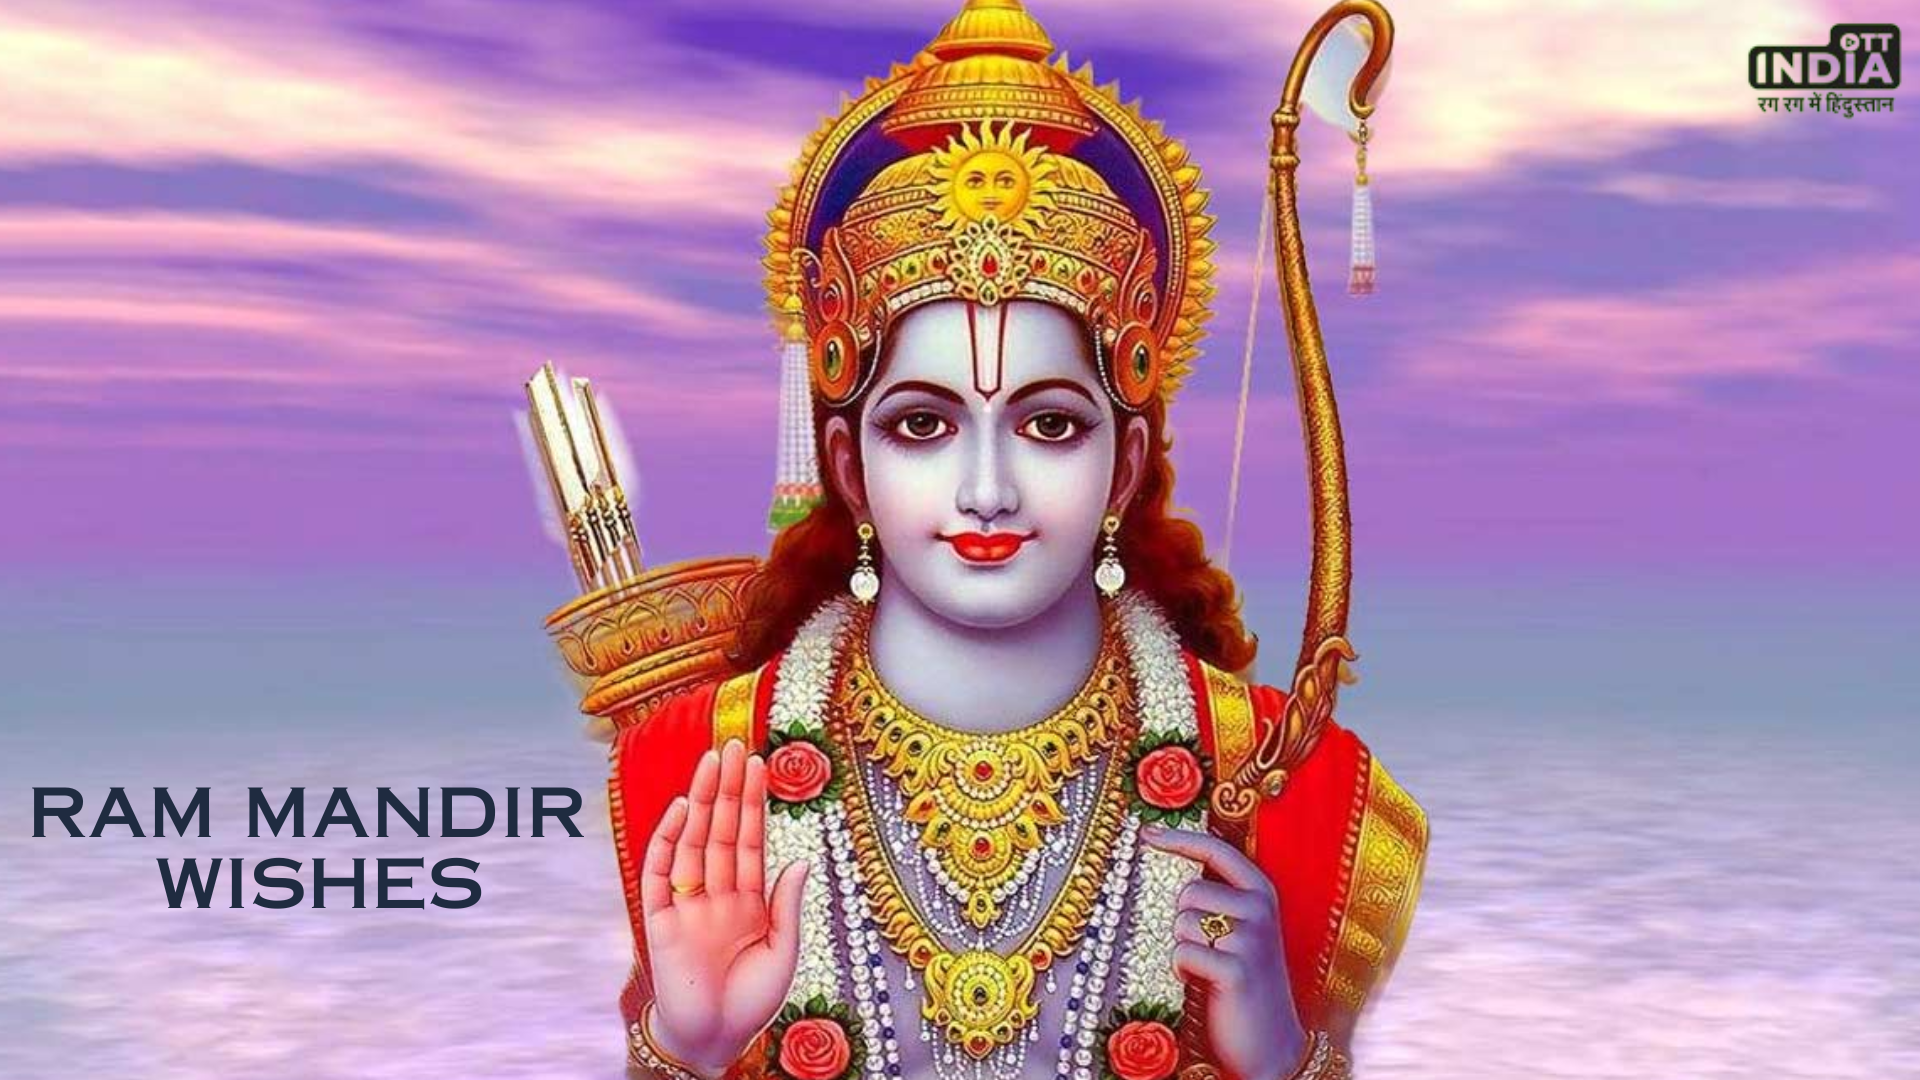 Ram Mandir Wishes: श्रीराम के प्राण प्रतिष्ठा के अवसर पर अपनों को भेजें ये खास शुभकामनाएं